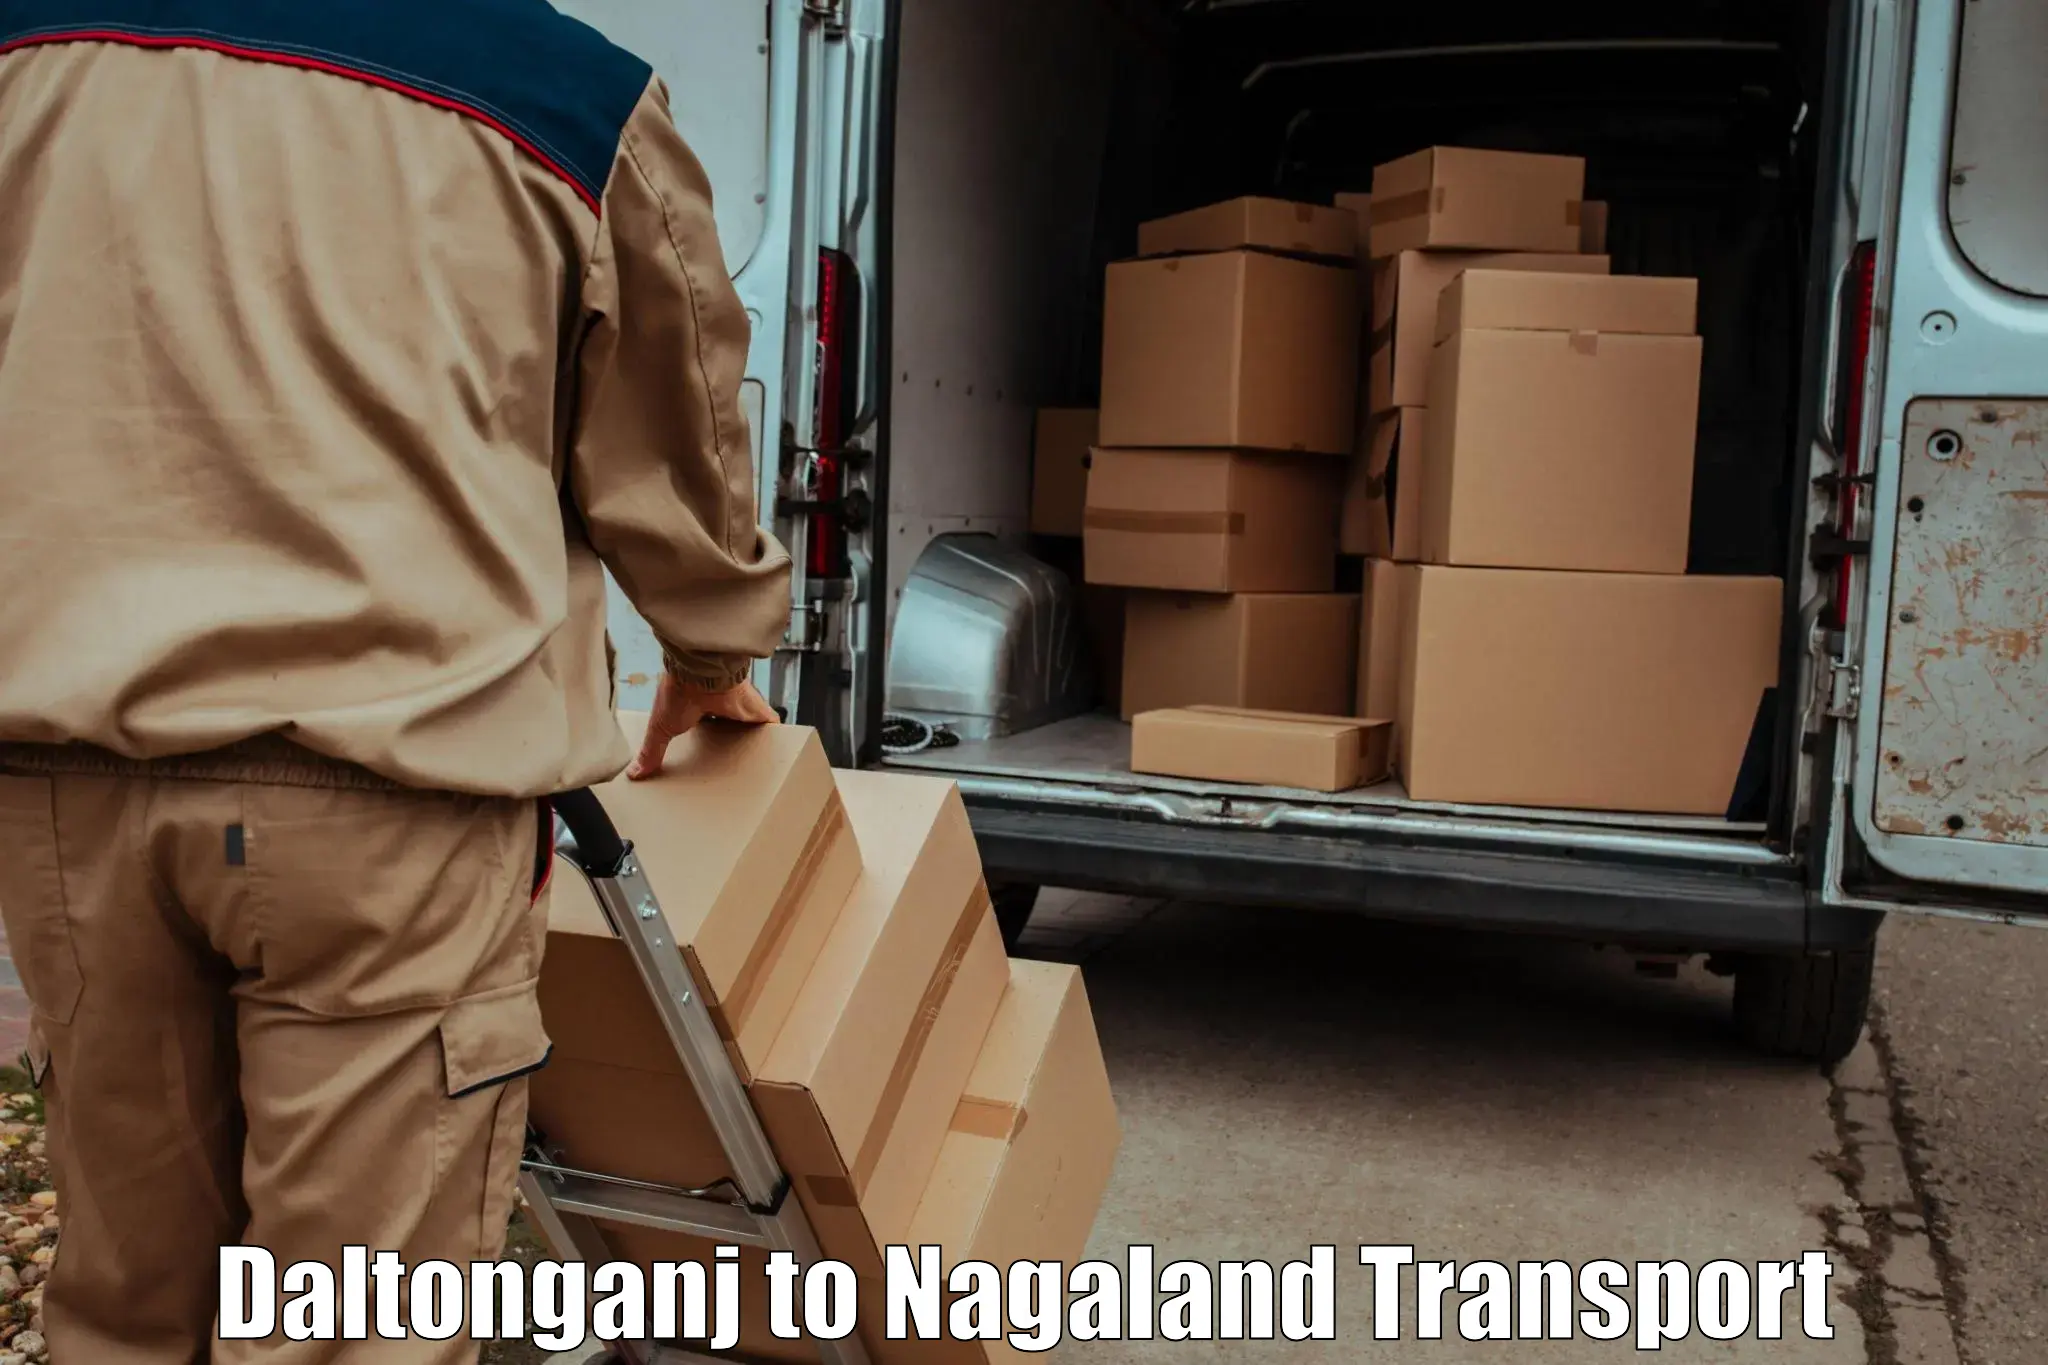 Shipping partner Daltonganj to NIT Nagaland